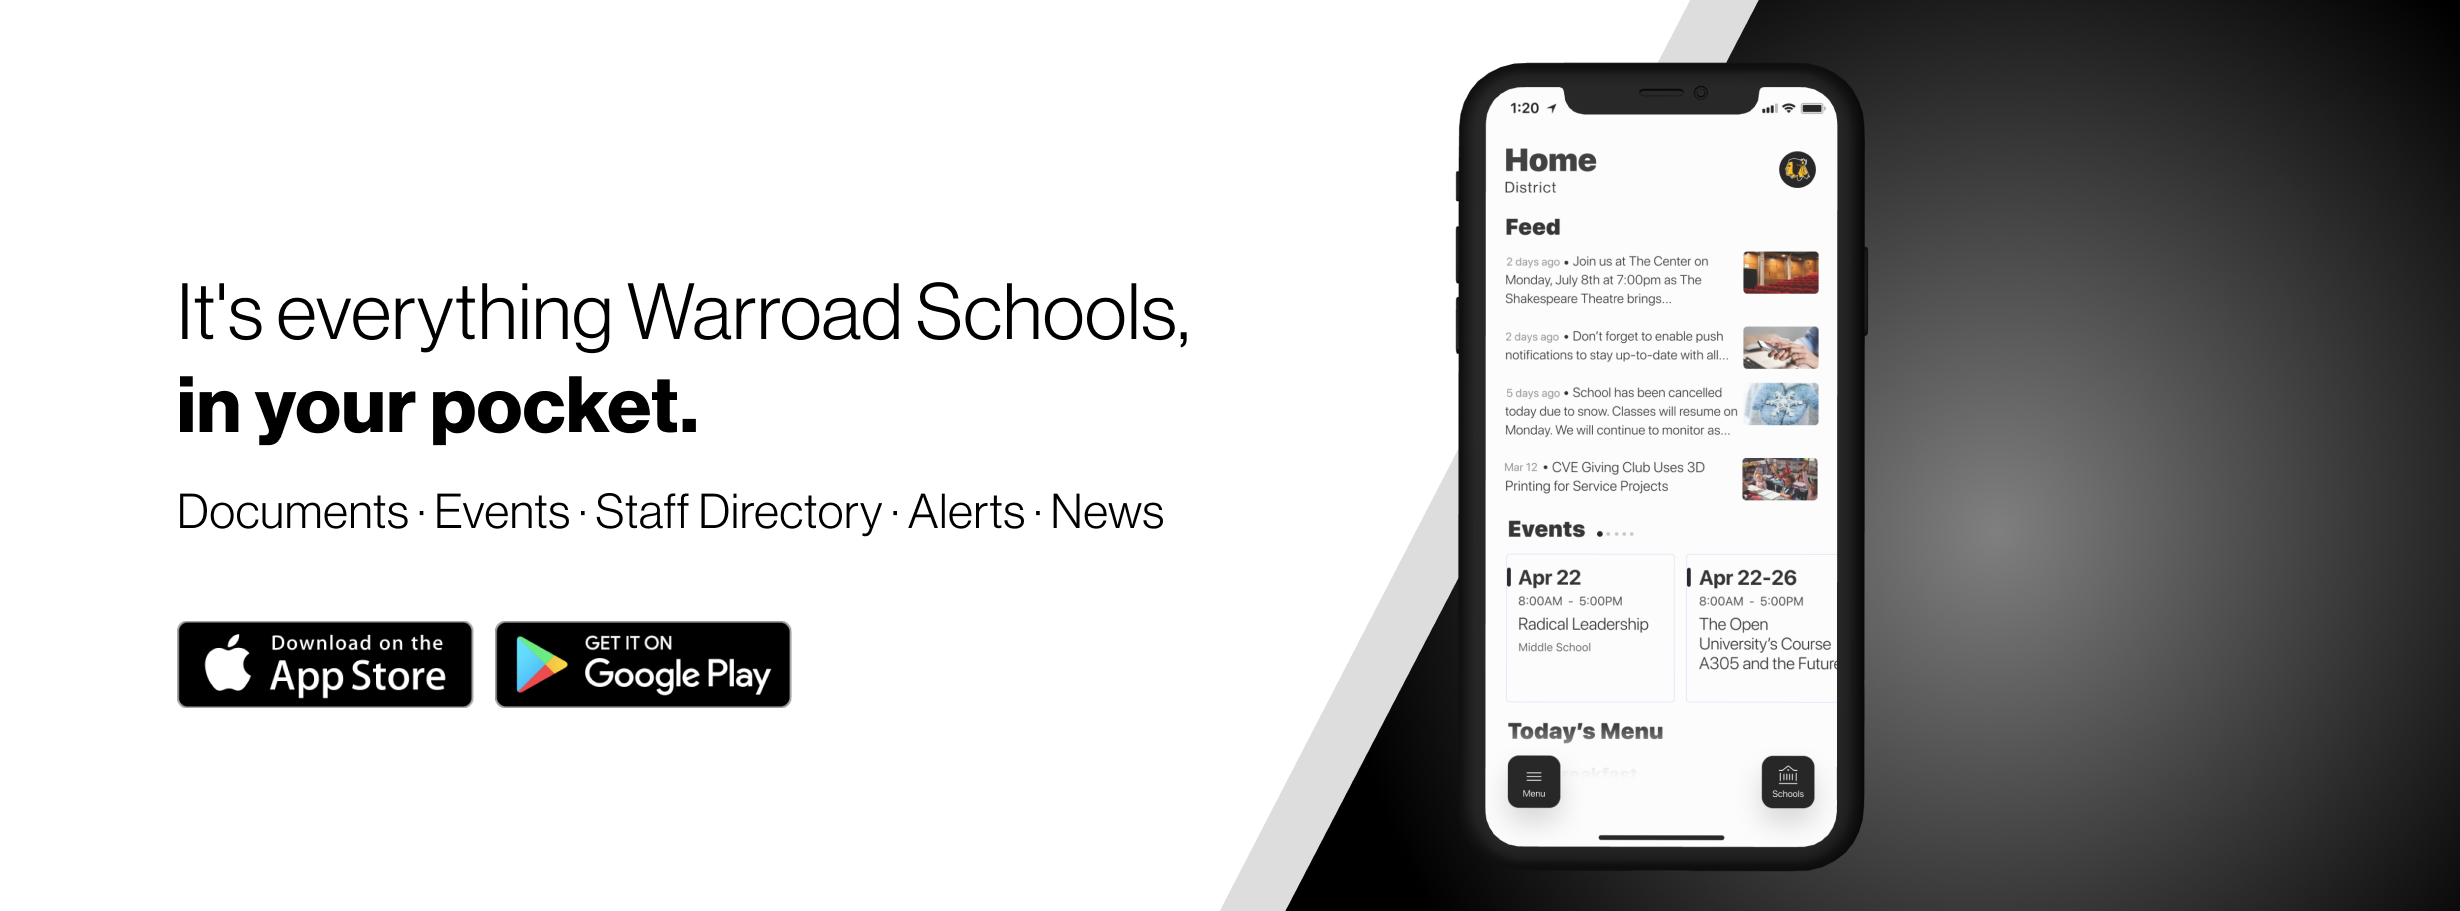 Warroad Schools App advertisement